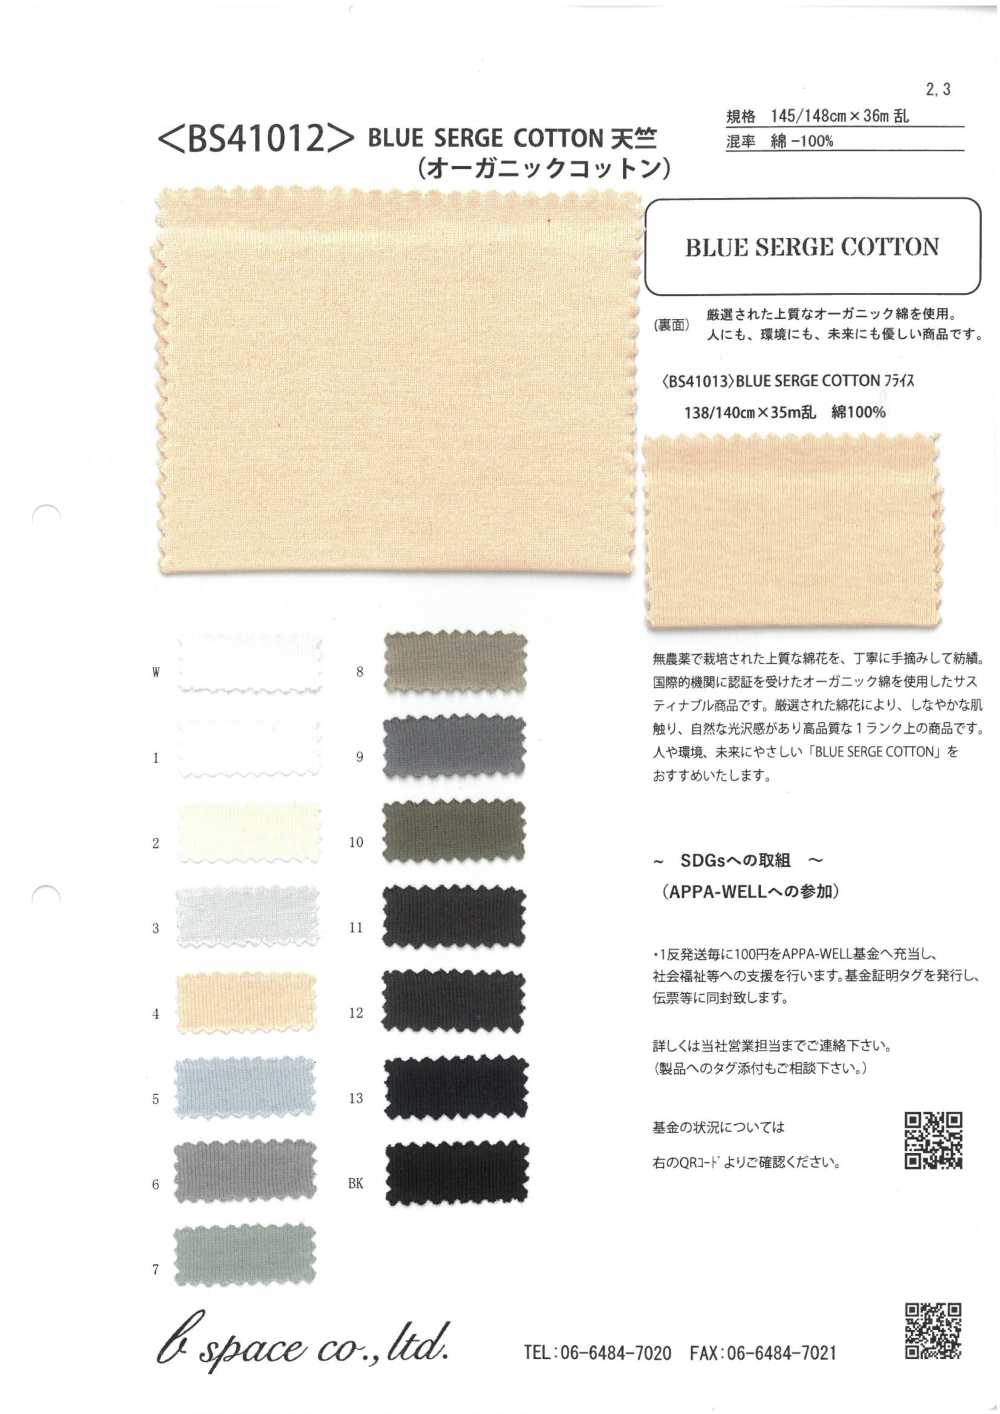 BS41012 蓝色哔叽棉 40/2天竺平针织物[面料] 基本配速